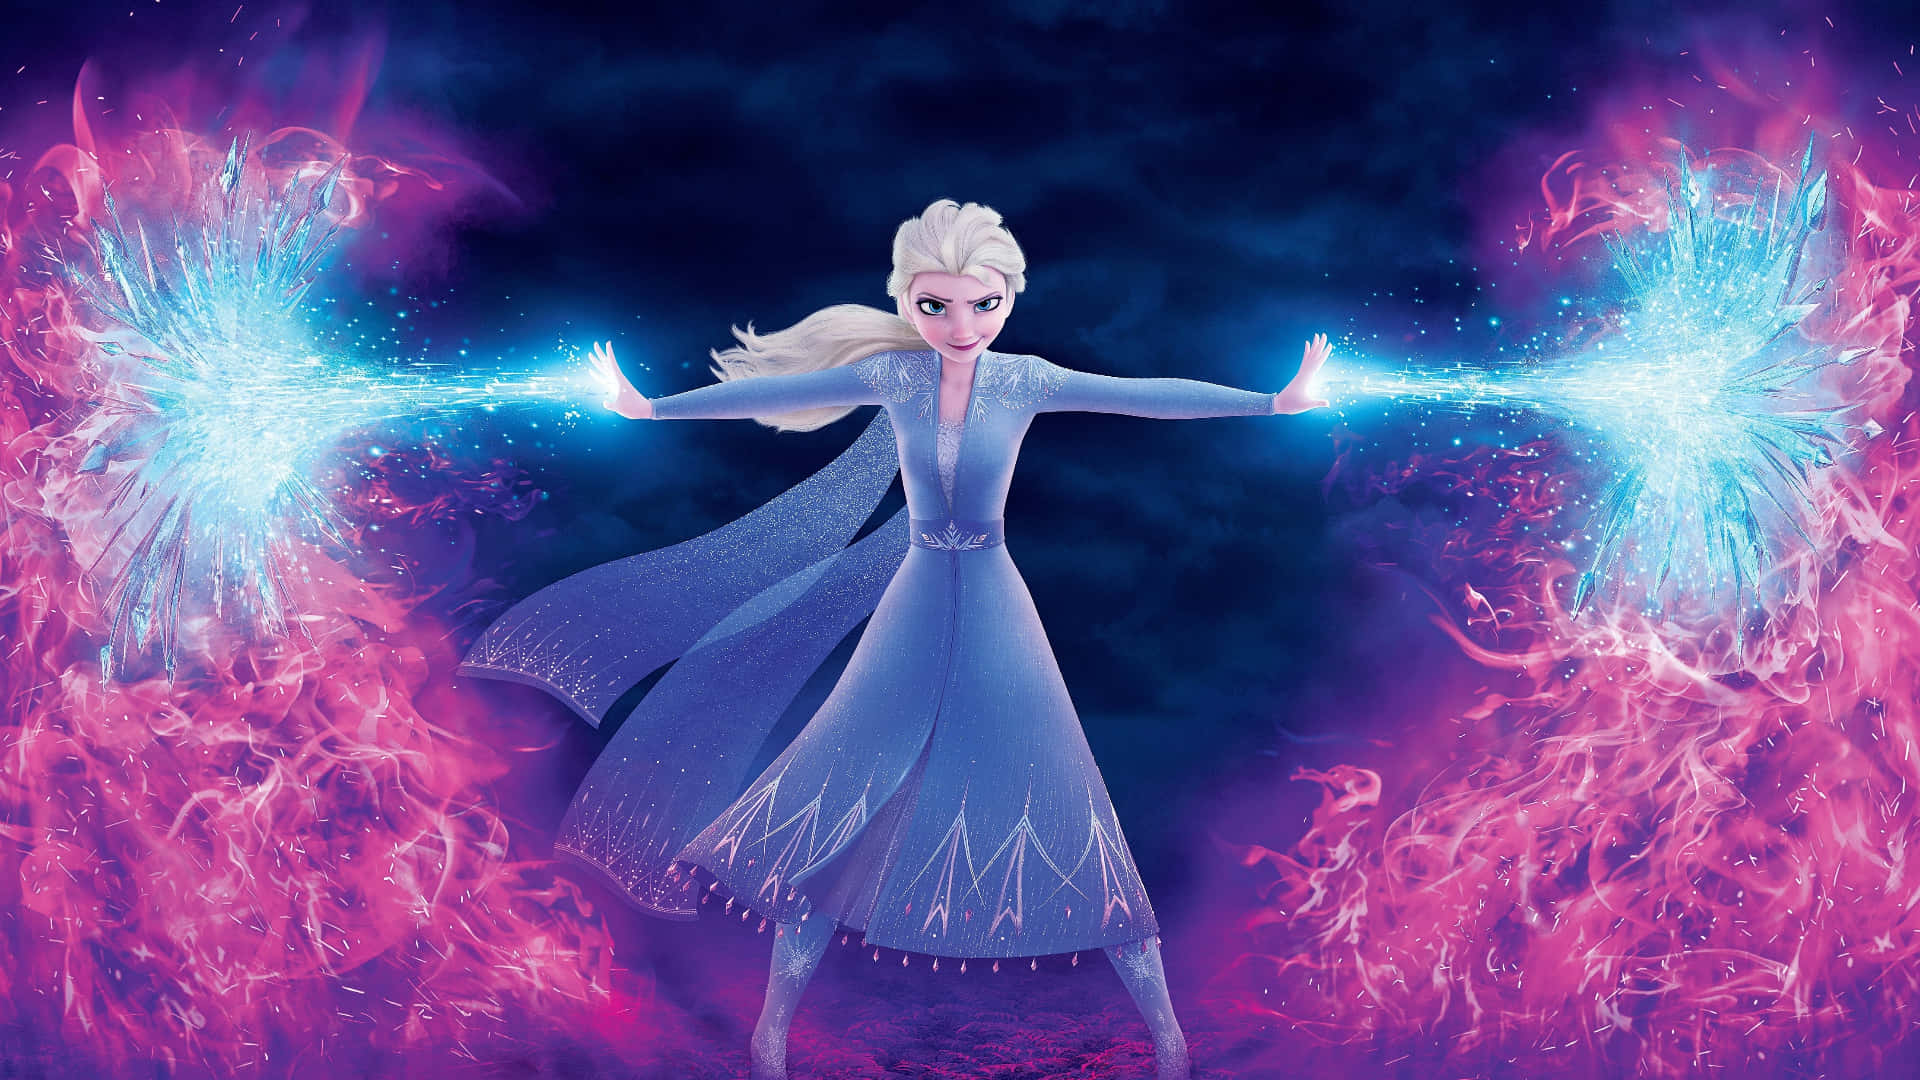 Únetea Elsa, Anna, Kristoff Y Olaf Para Divertirte Y Vivir Aventuras En Frozen.